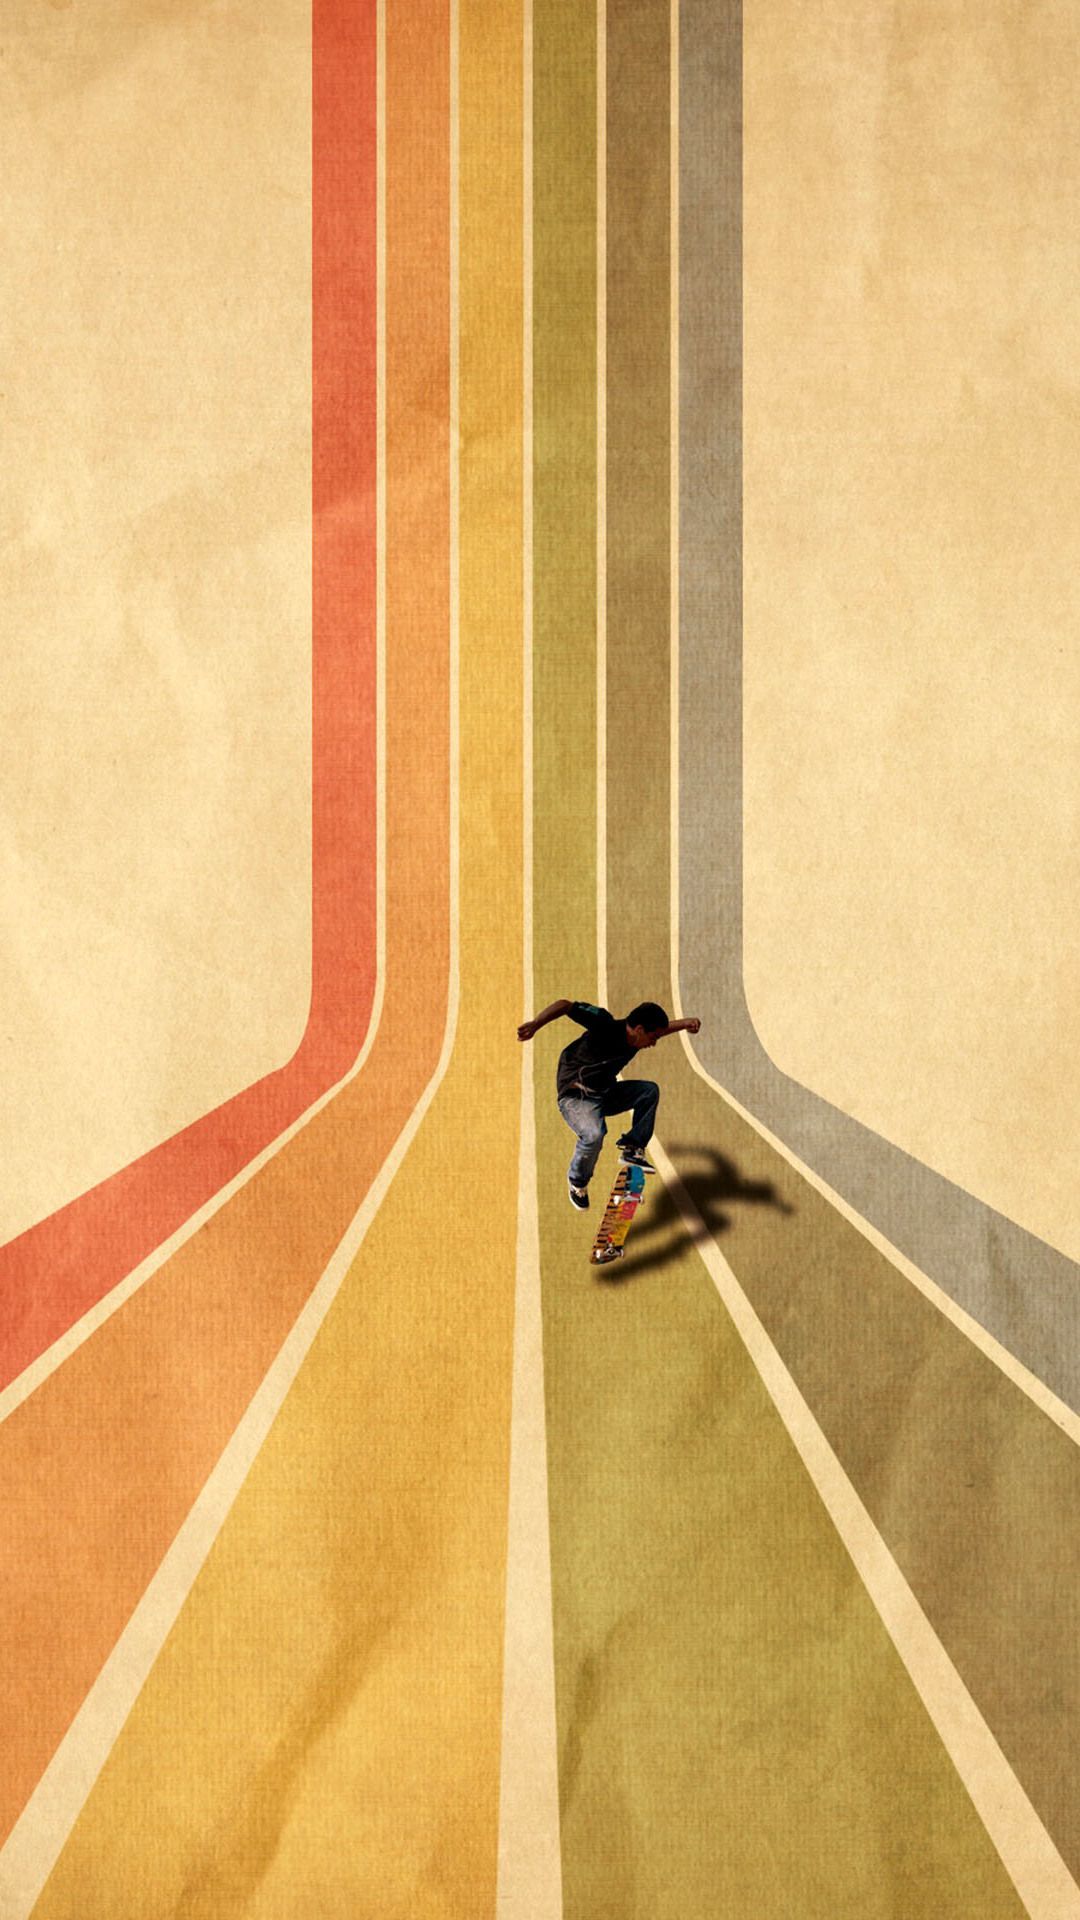 Vintage Skateboard On Colorful Stipe Runway iPhone 6 Wallpaper ...